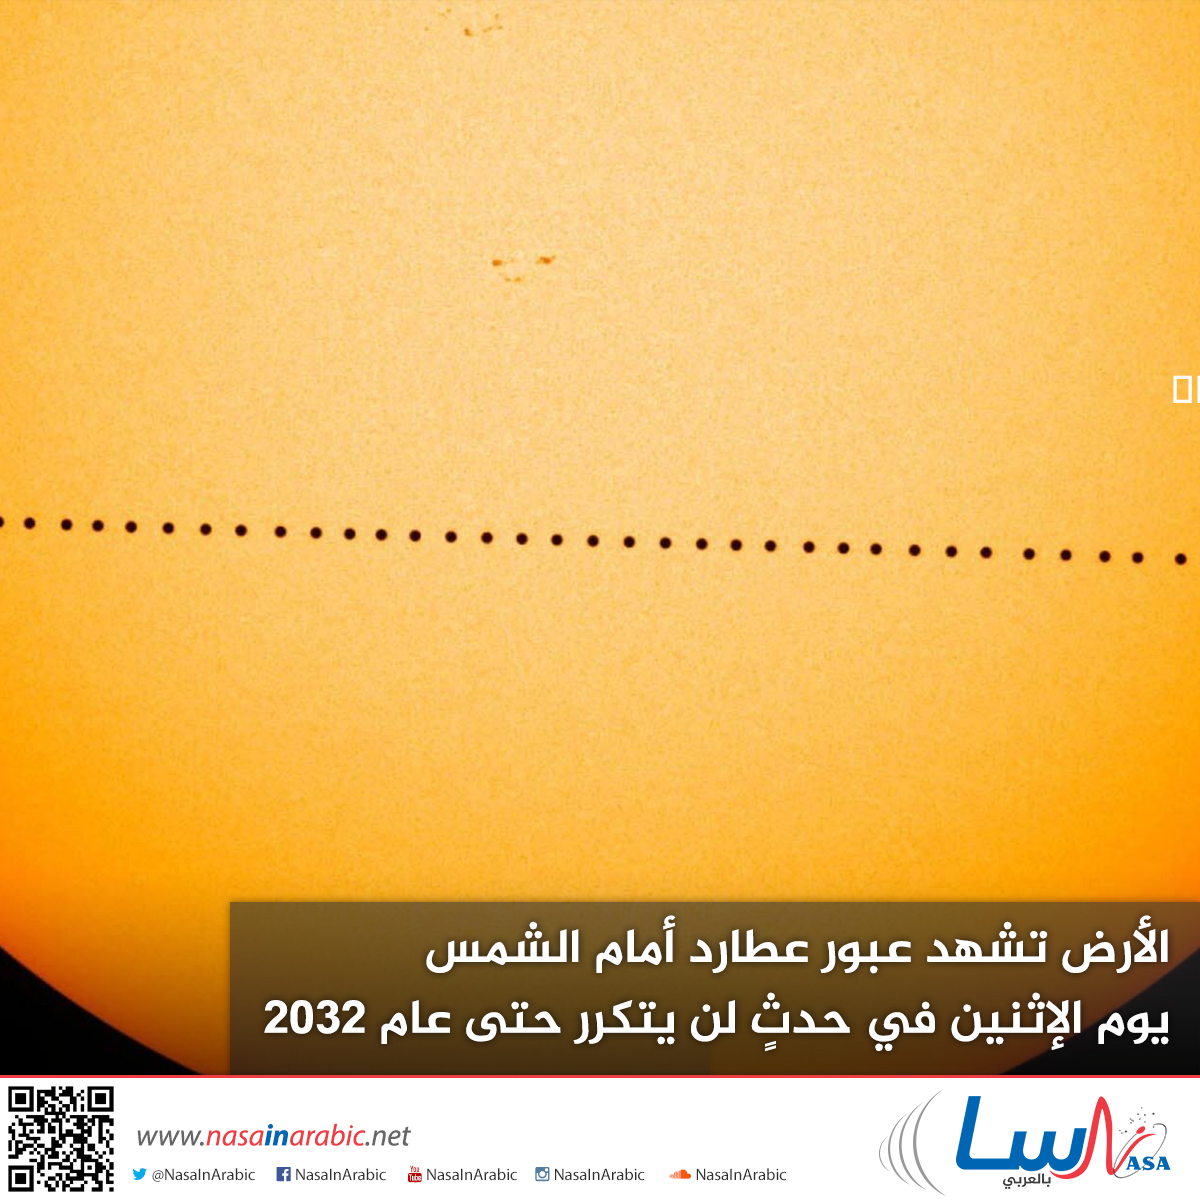 الأرض تشهد عبور عطارد أمام الشمس يوم الإثنين في حدثٍ لن يتكرر حتى عام 2032